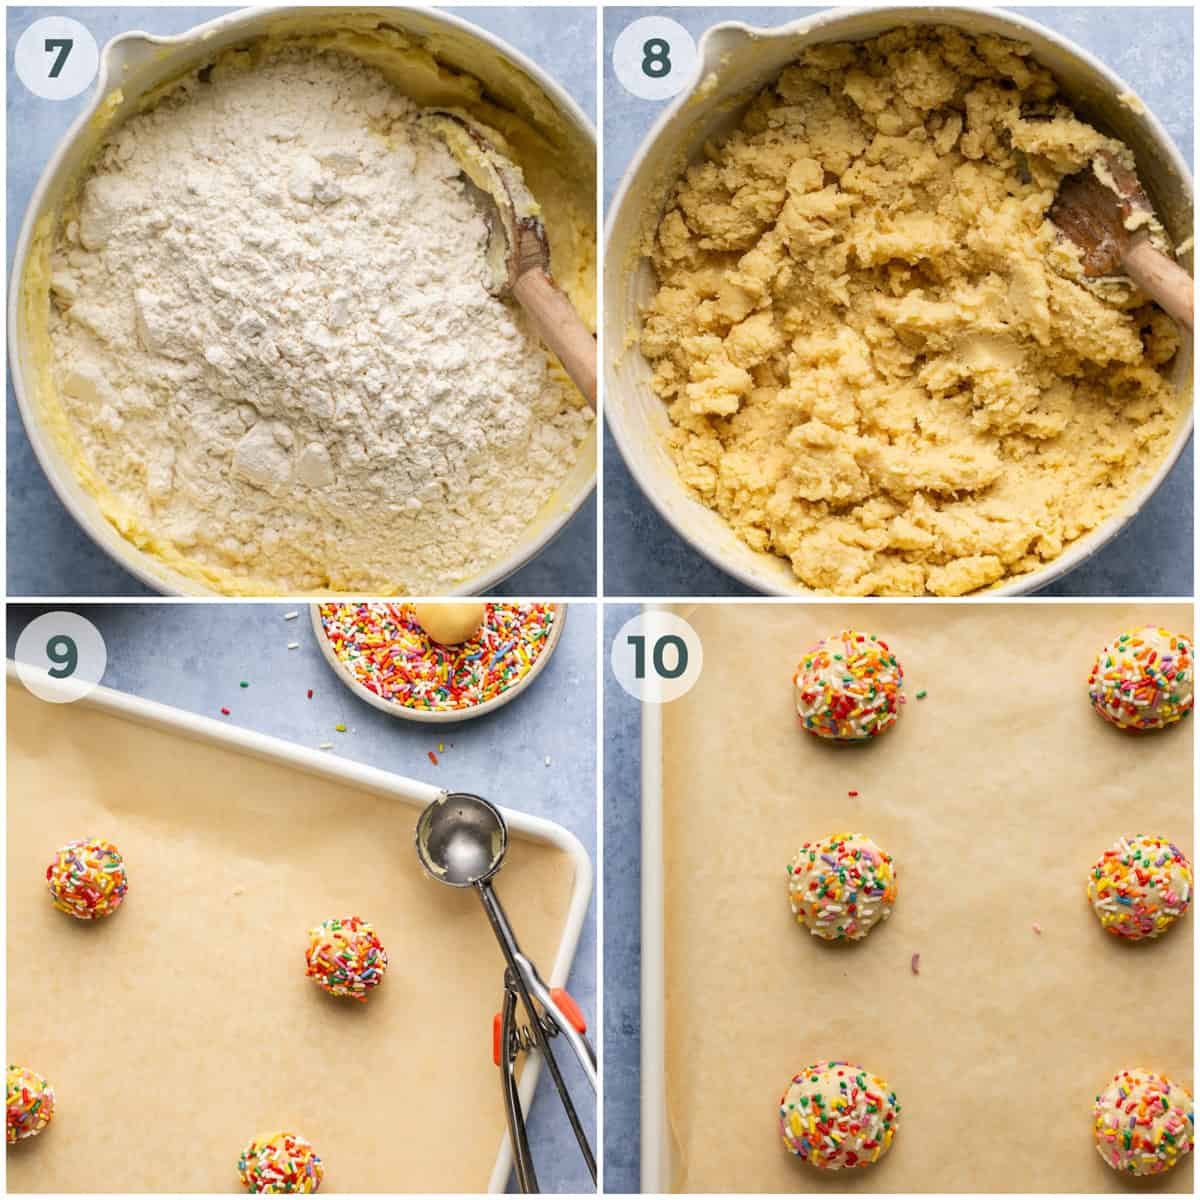 steps 7-12 for preparing sprinkle cookies